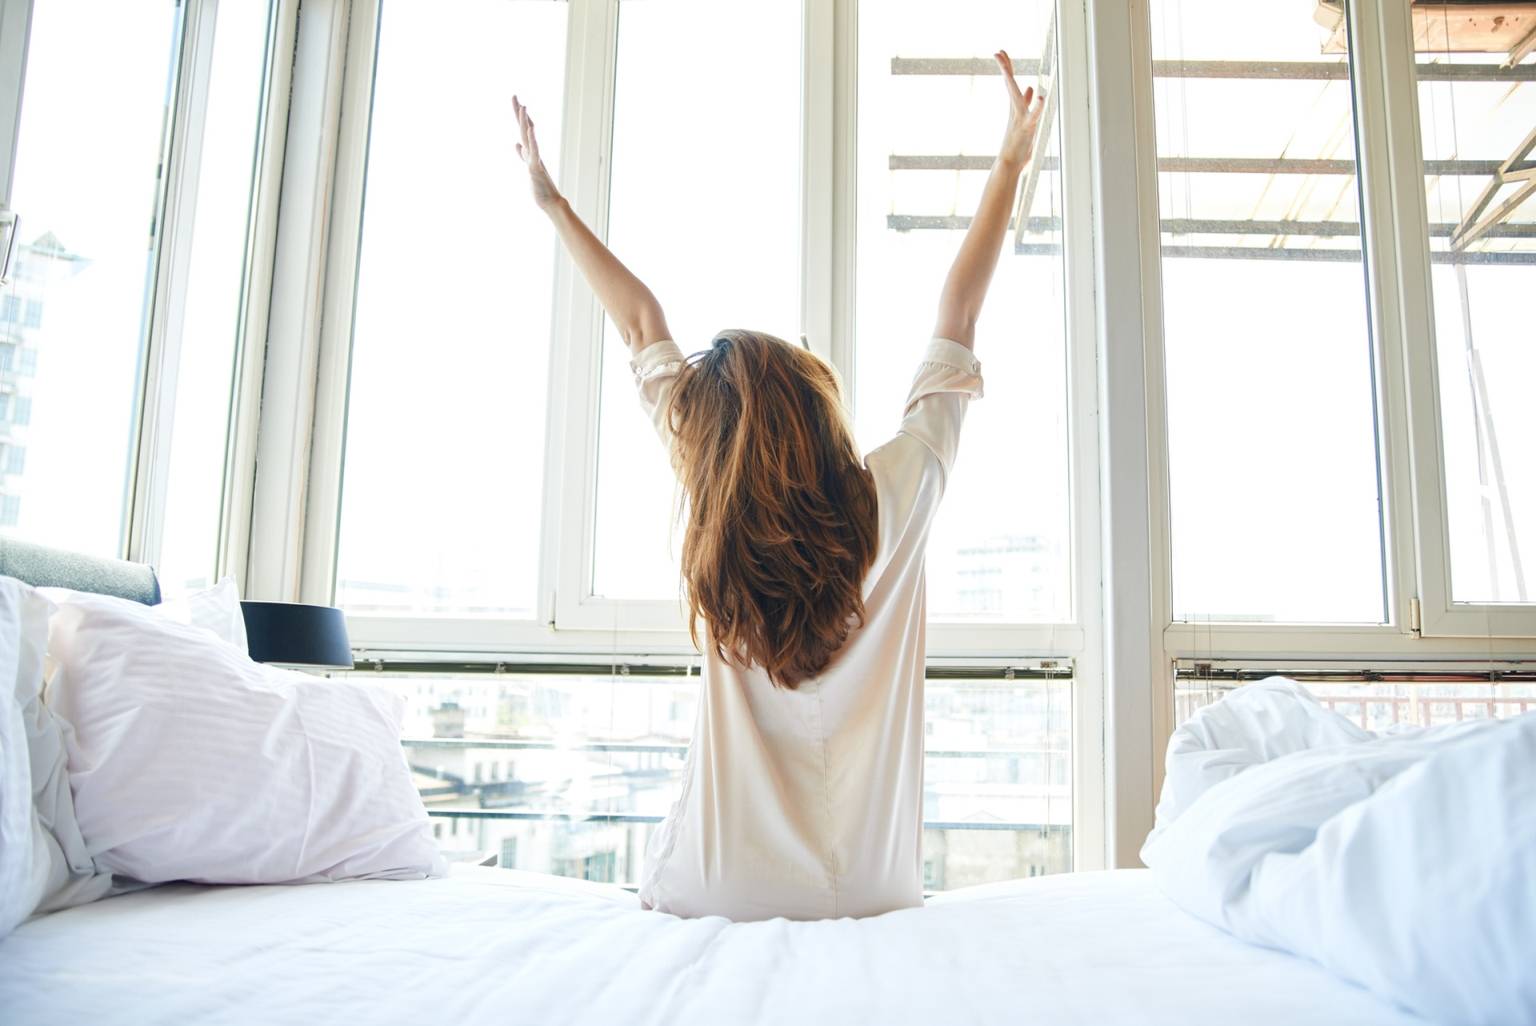 Praktyka i medytacja wdzięczności, czyli jak dobrze zacząć dzień. Młoda kobieta w białej koszuli wstaje z łóżka o poranku. siedząc jeszcze na łóżku, przeciąga się patrząc w okna.